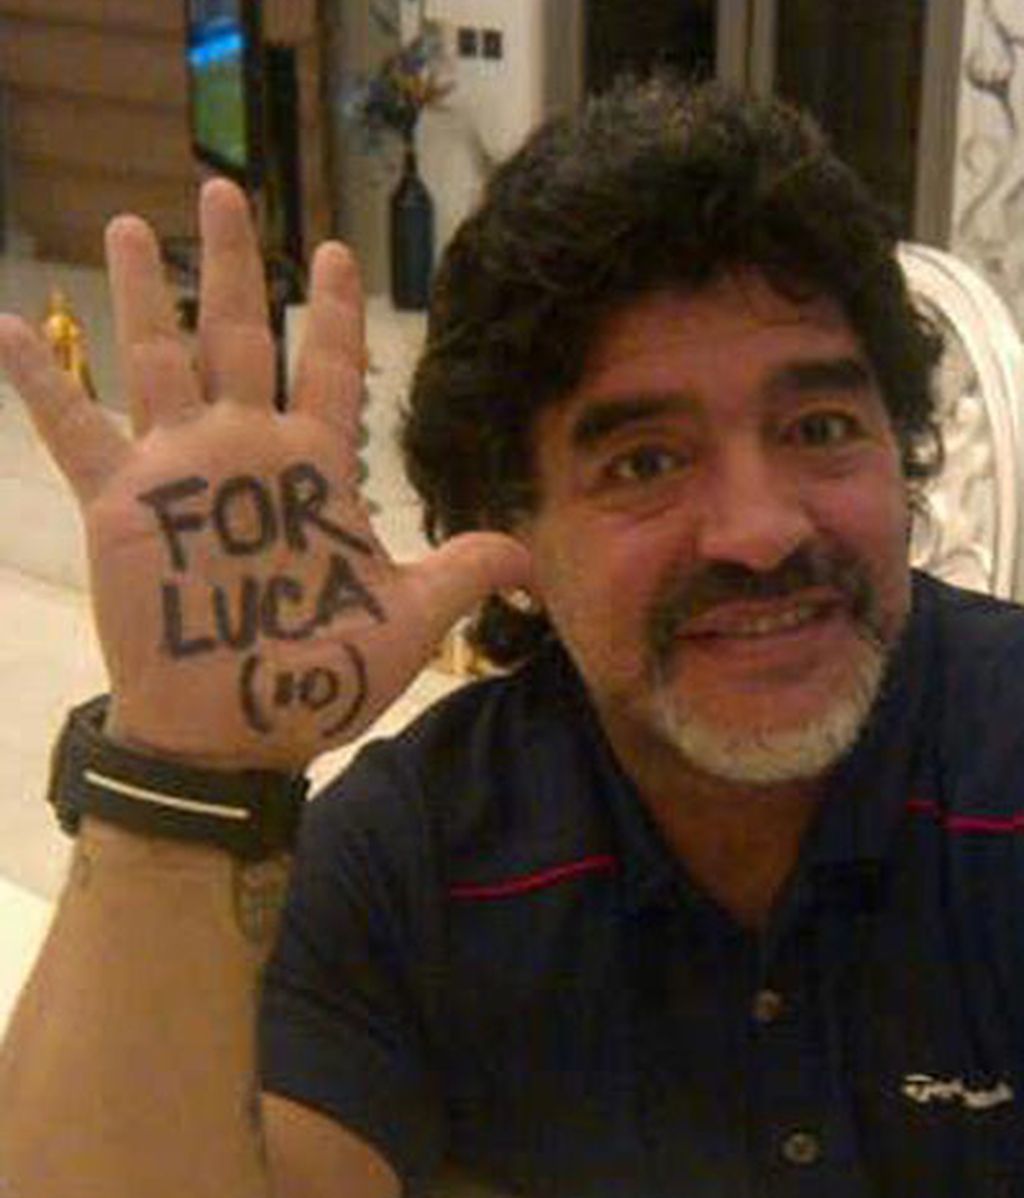 Famosos solidarios 'For Luca'